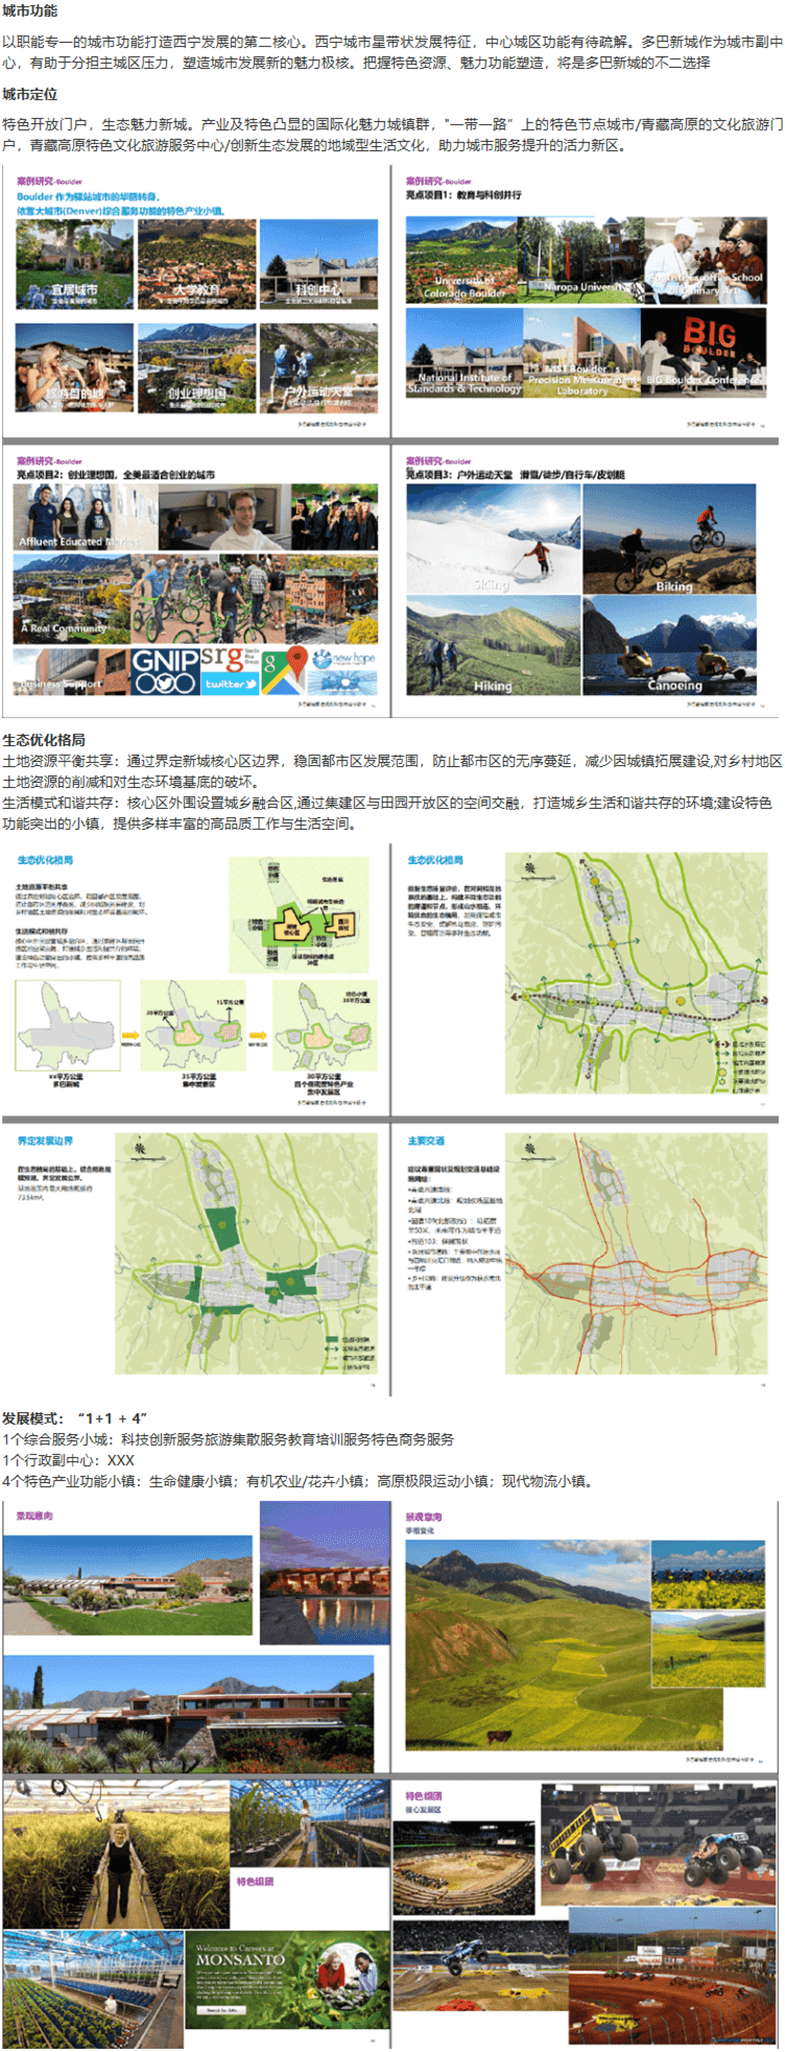 多巴新城概念规划和总体城市设计-3